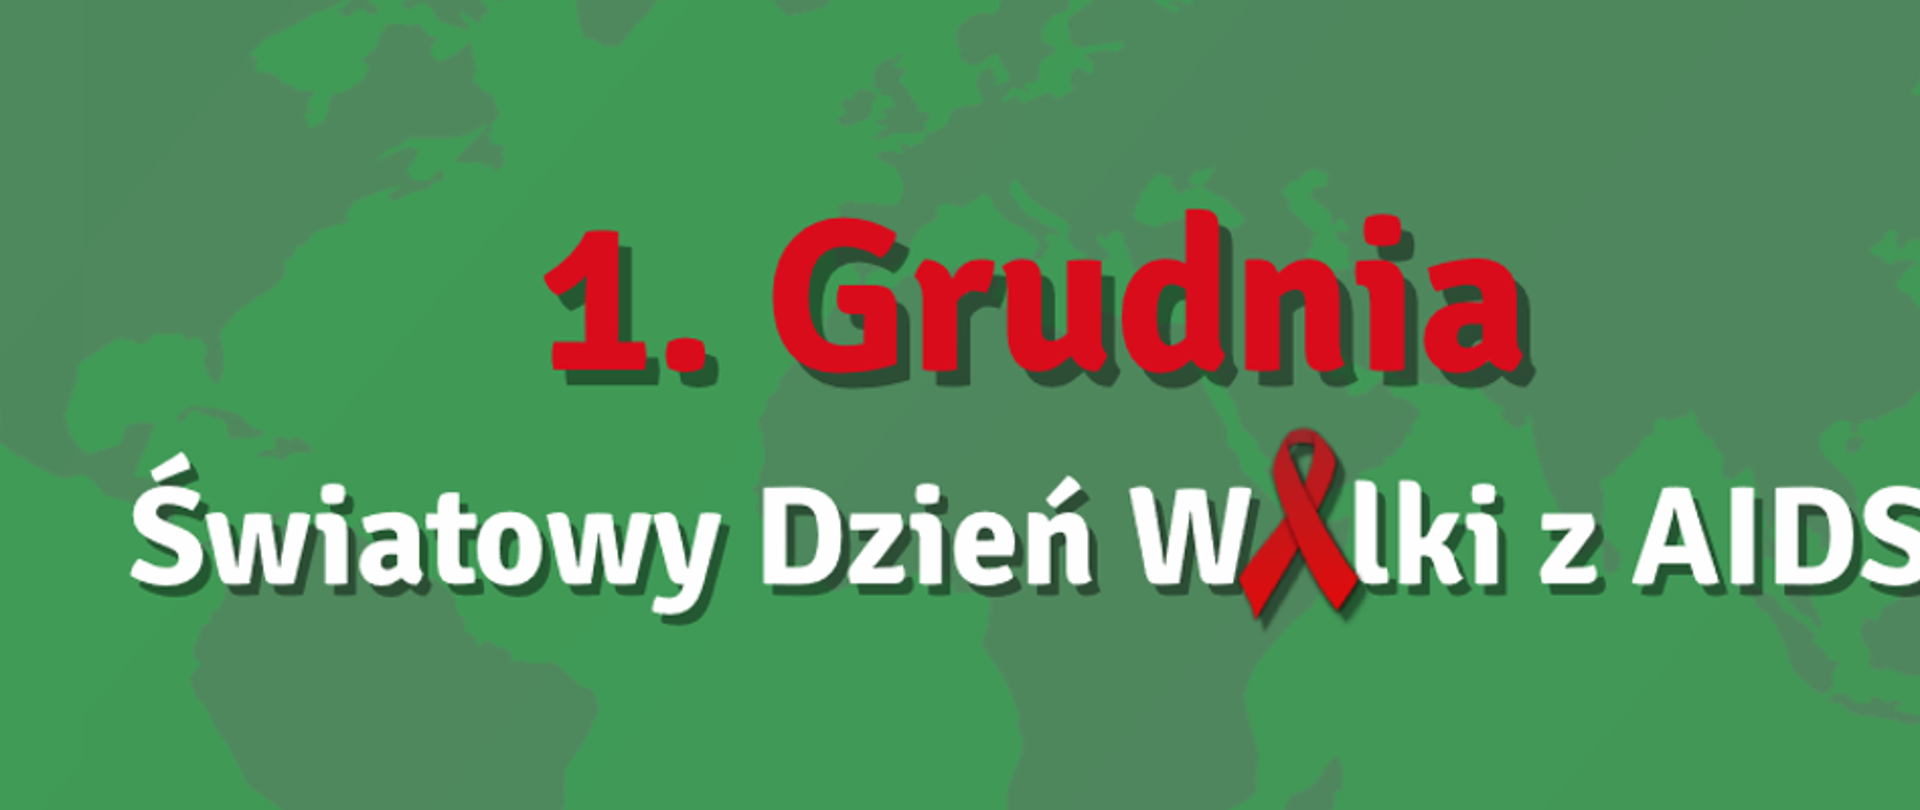 1 grudnia swiatowy dzien aids